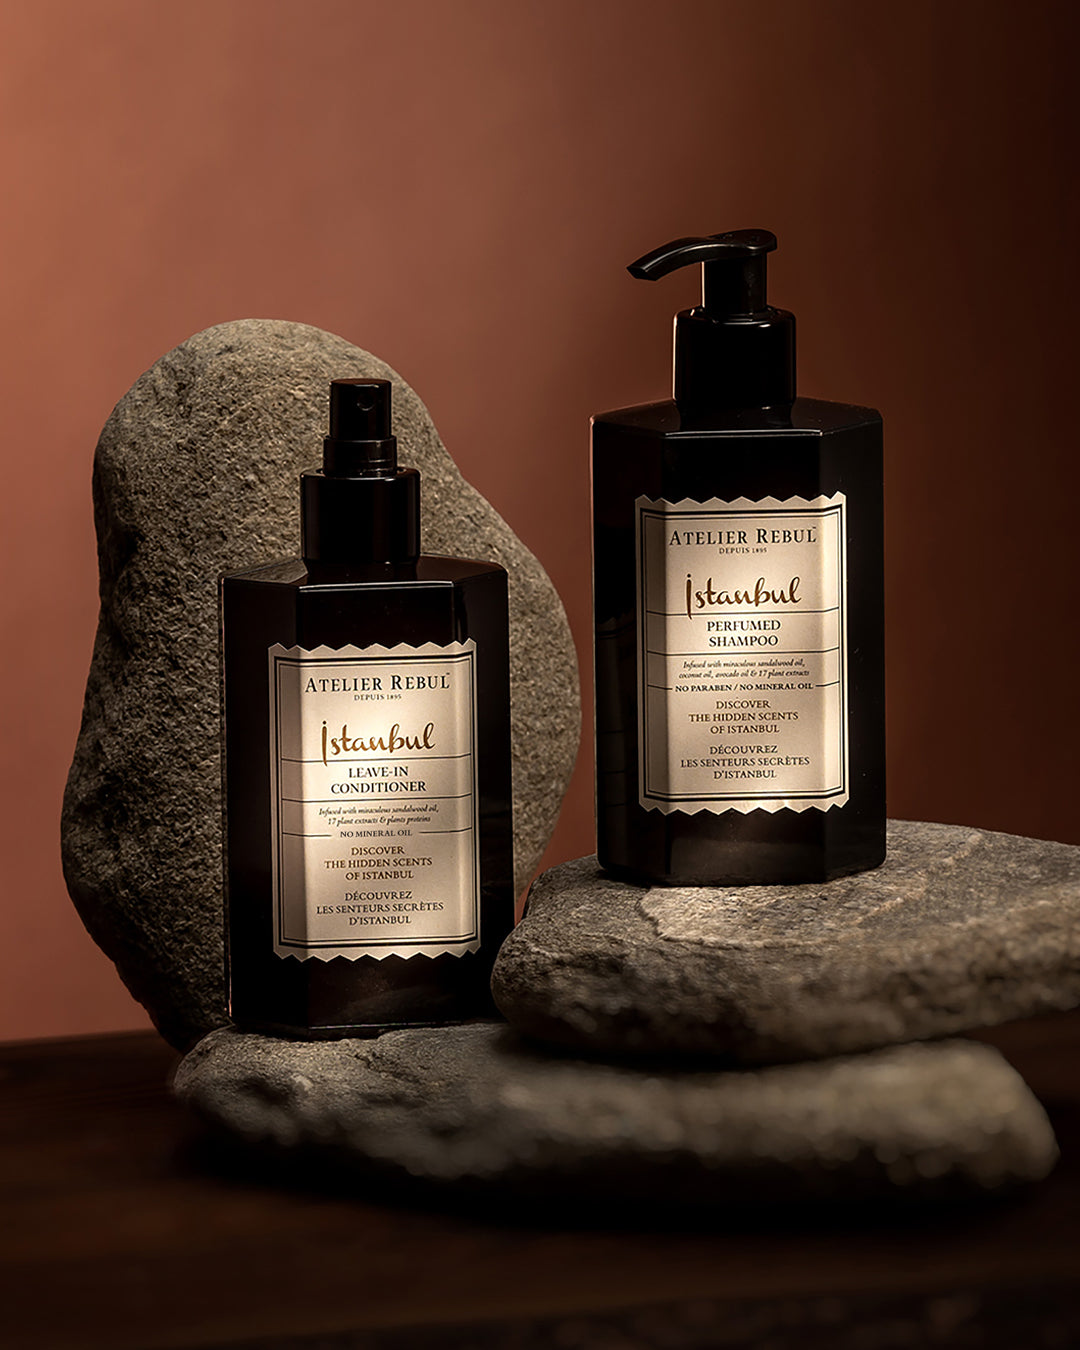 istanbul perfumed shampoo und leave in conditioner auf flach geformten steinen. brauner hintergrund.